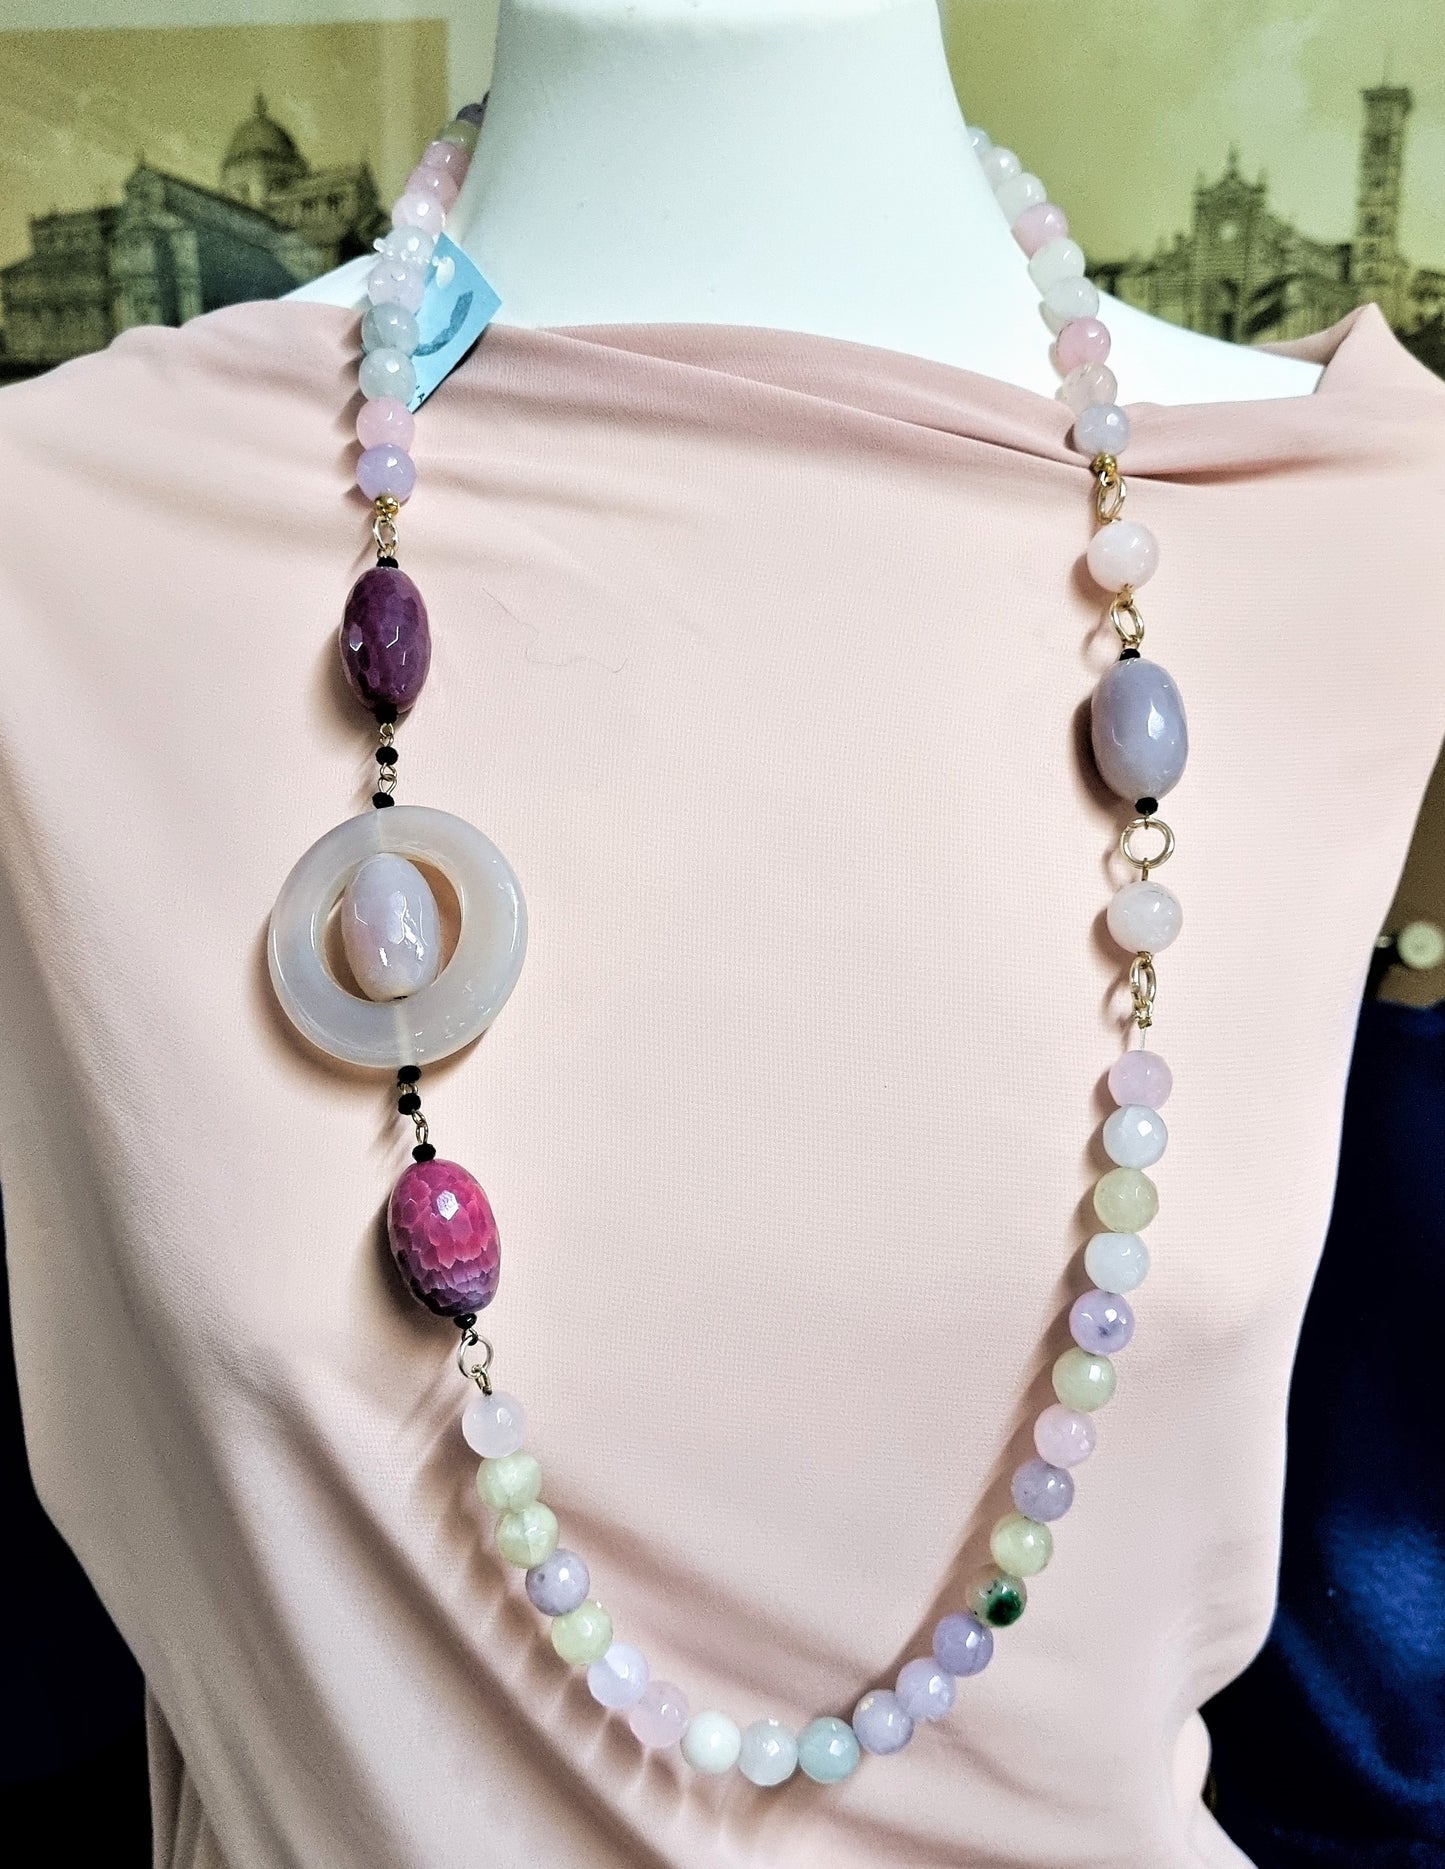 LUXURY collana .018, perle sfaccettate quarzo in vari colori pastello, barilotti e tondo in agata.